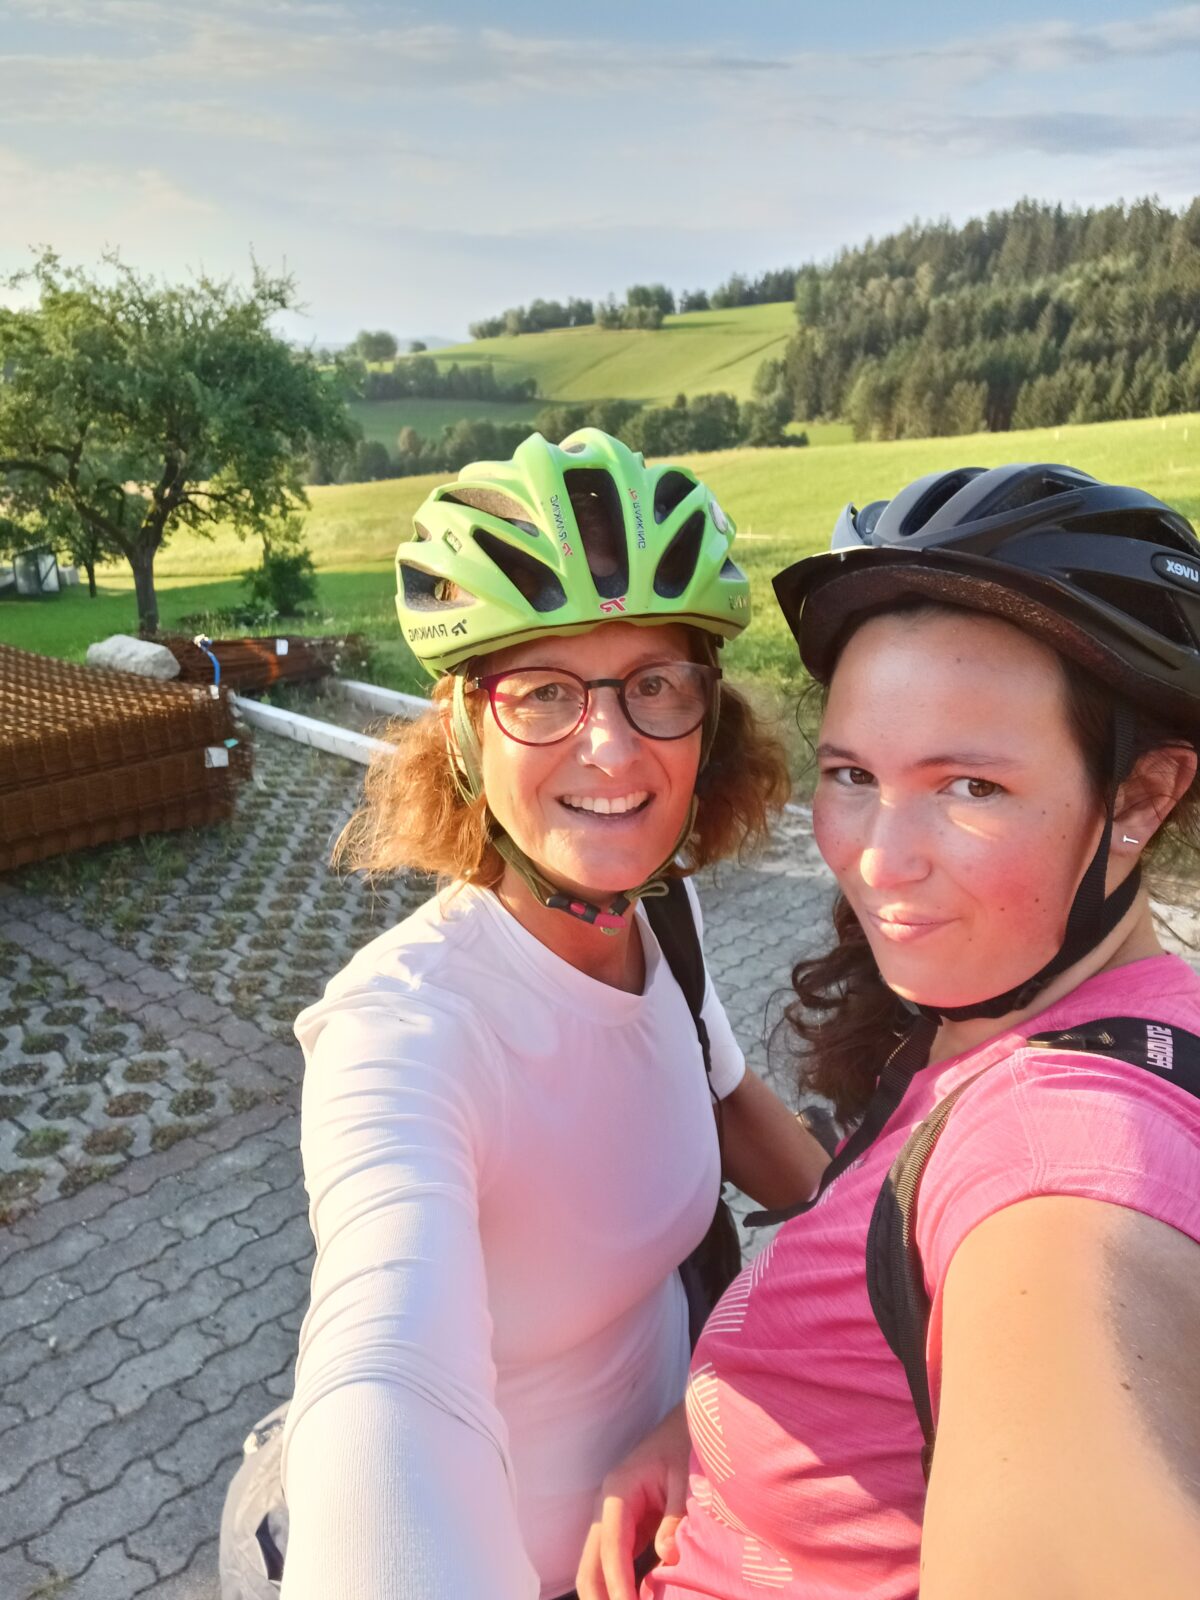 Selfie mit zwei Frauen, die einen Fahrradhelm tragen, im Hintergrund ist eine Landschaft mit Wiesen und Wälder